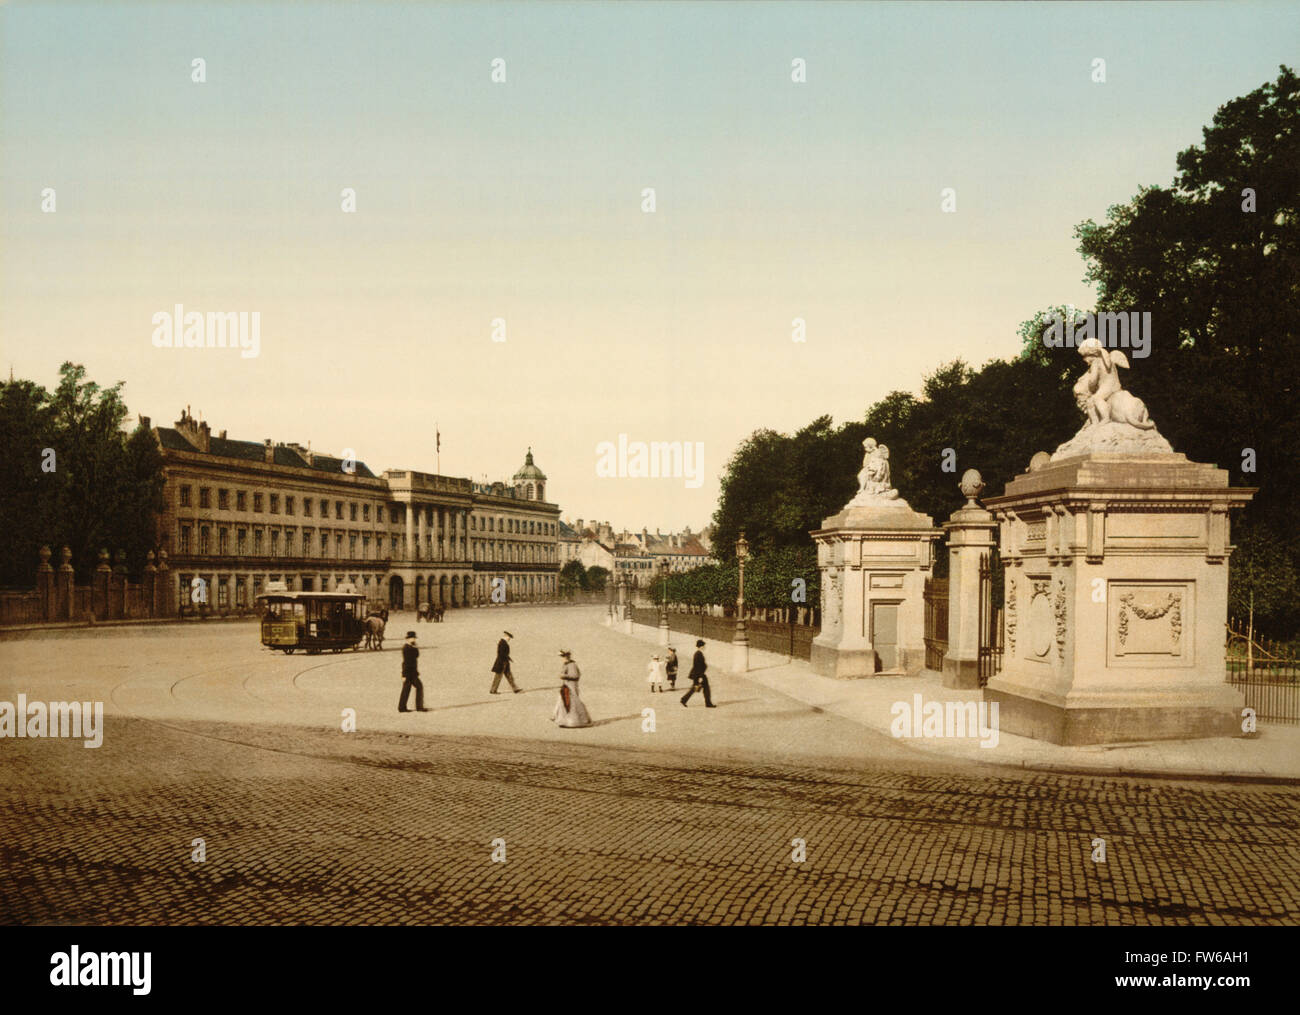 Palais royal, Bruxelles, Belgique, impression Photochrome, vers 1900 Banque D'Images